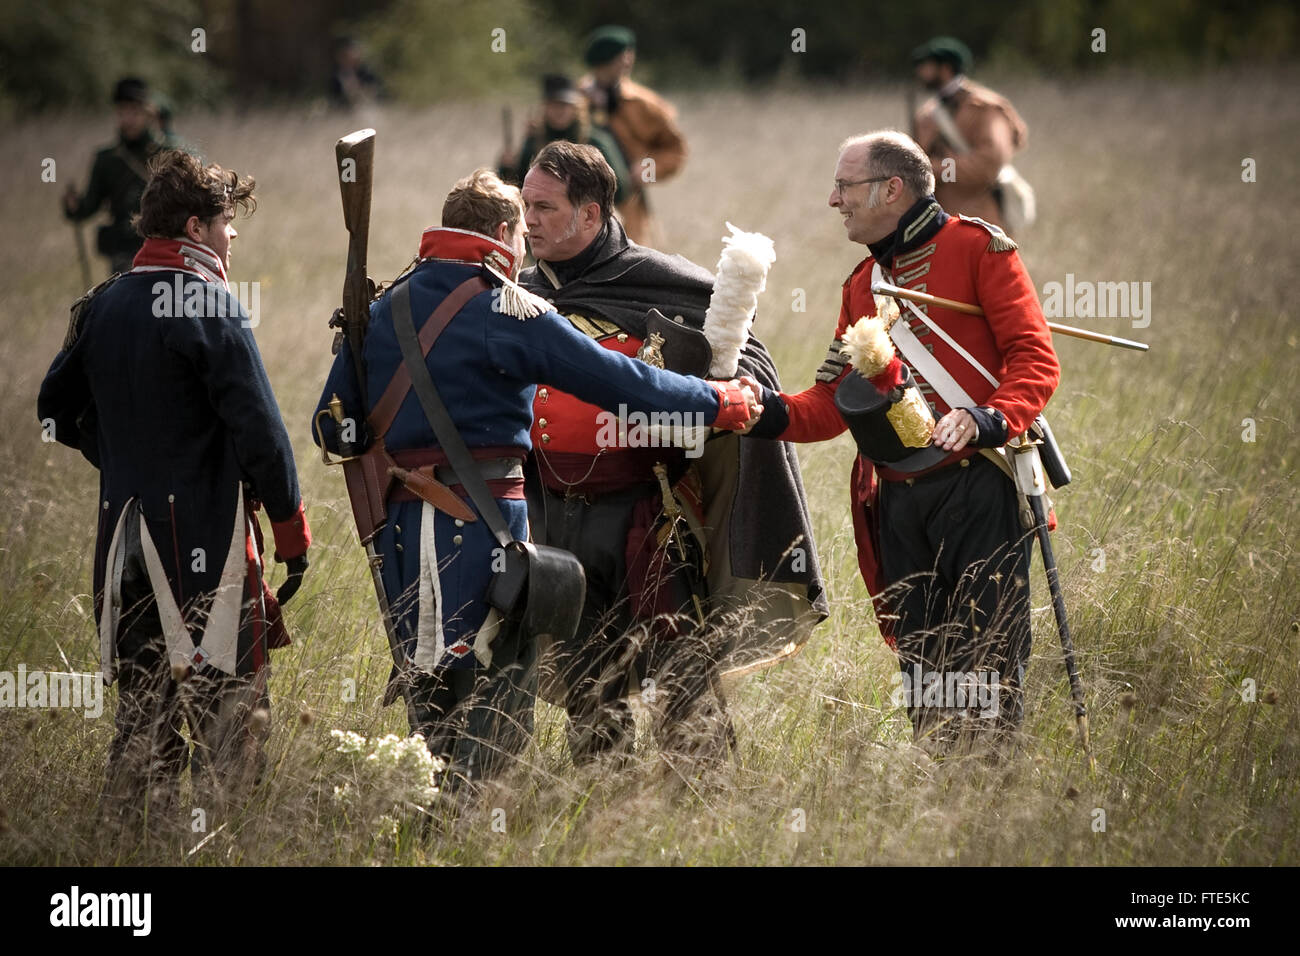 London, Ontario, Canada. De reconstitution historique dépeindre une bataille dans le cadre de la guerre de 1812 est dans le sud-ouest de l'Ontario au Canada. Au cours Banque D'Images